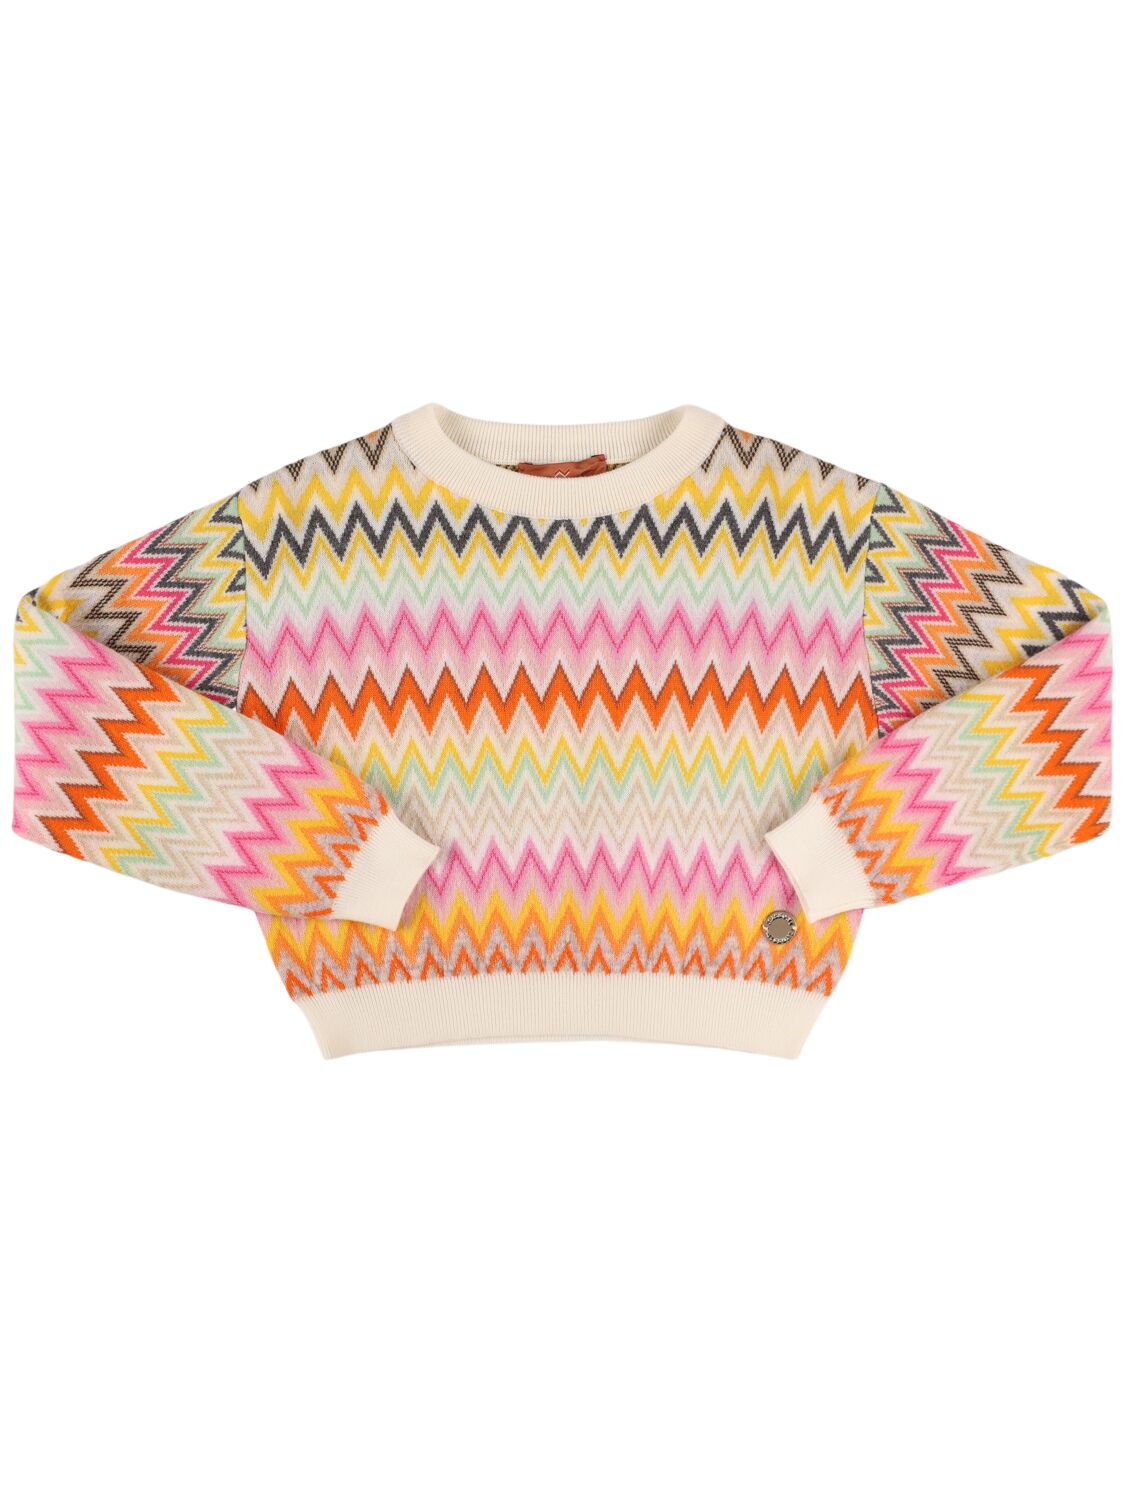 Missoni Zig Zag Jacquard Knit Wool Sweater In Multi